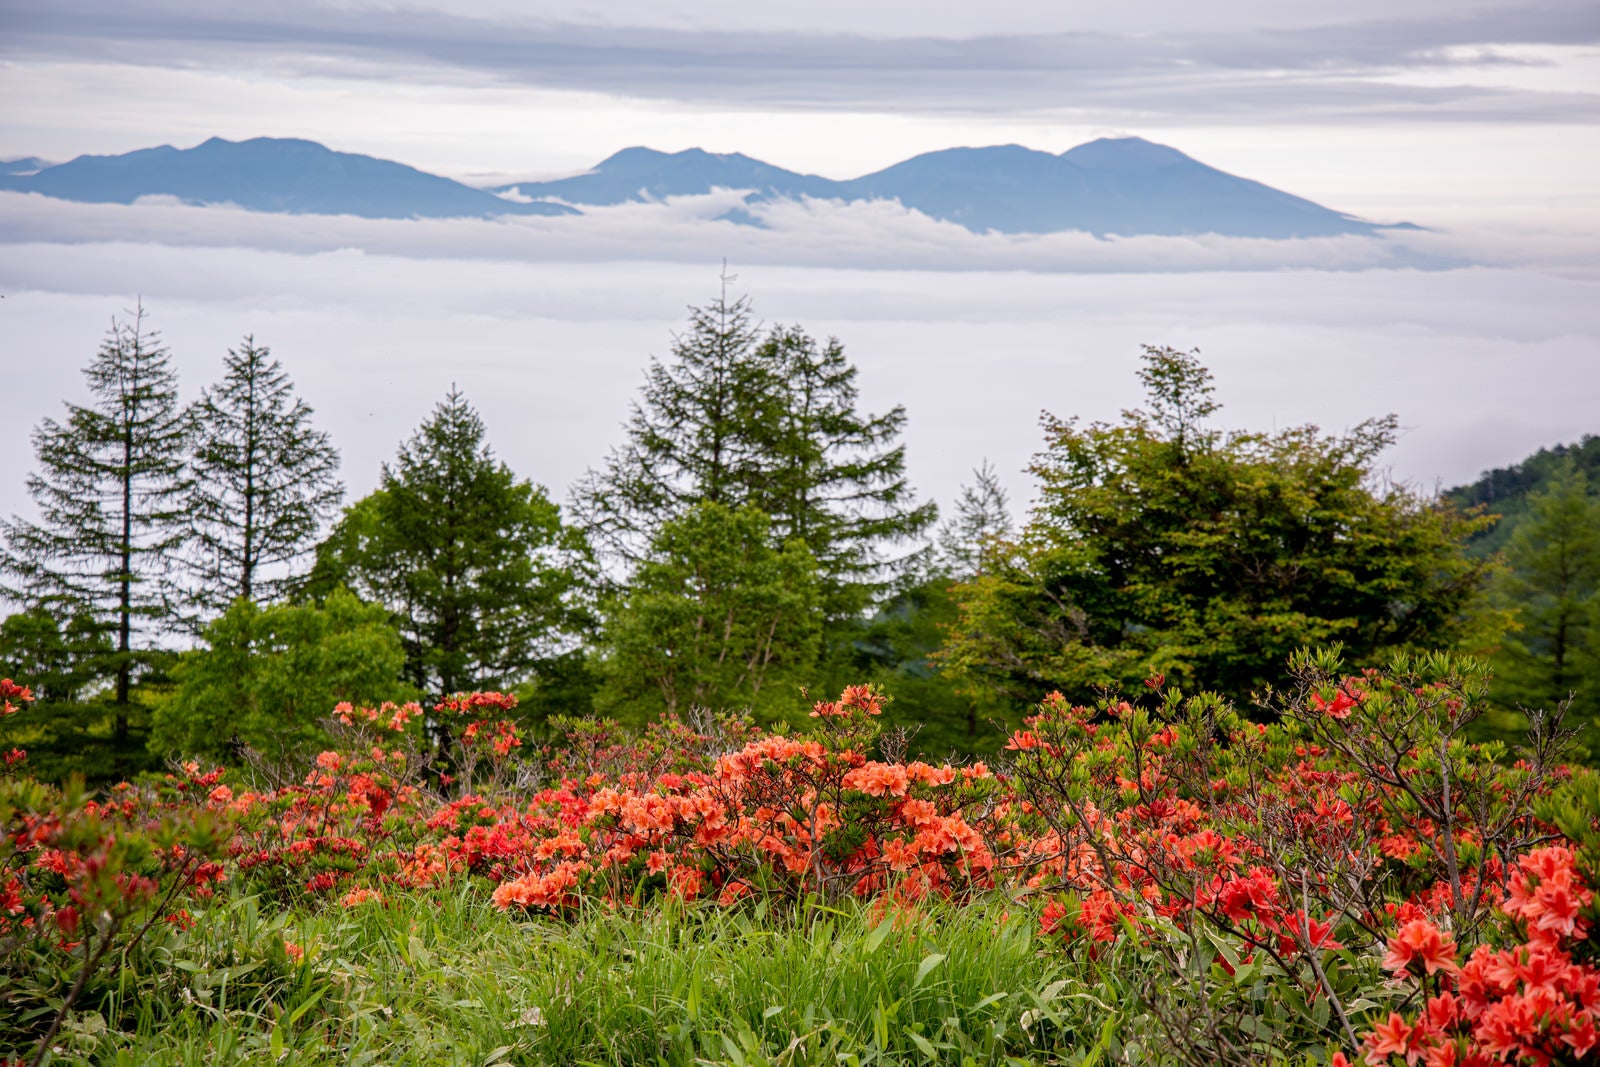 「美ヶ原のレンゲツツジと雲海」の写真